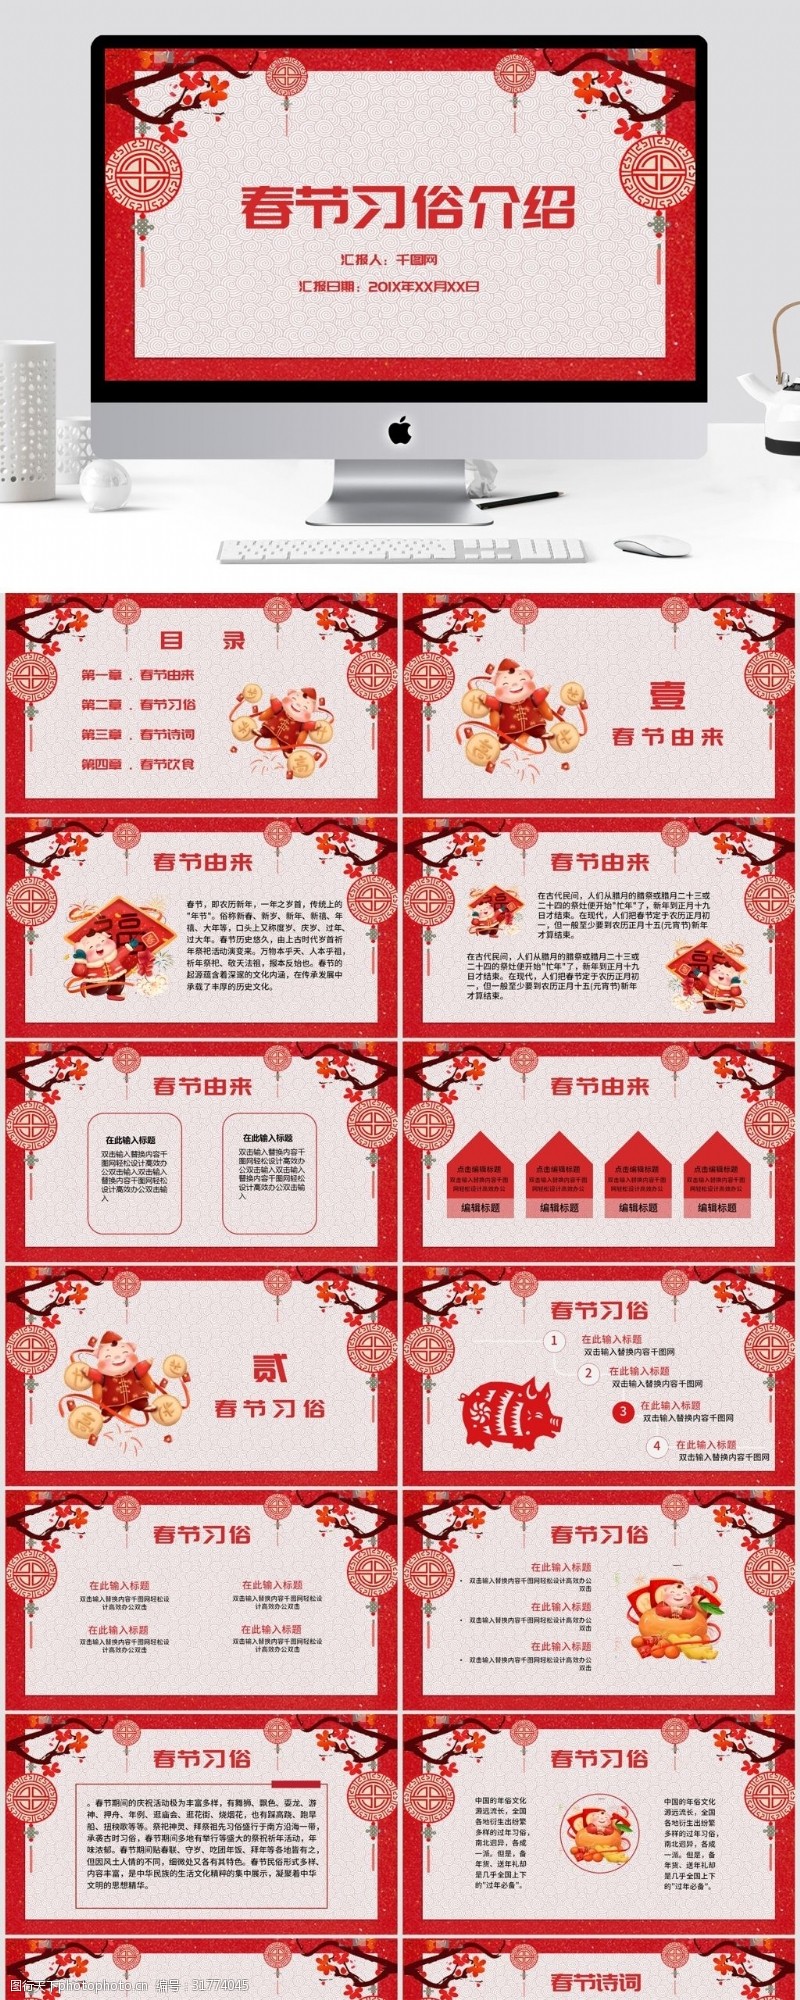 中国剪纸风之春节习俗介绍